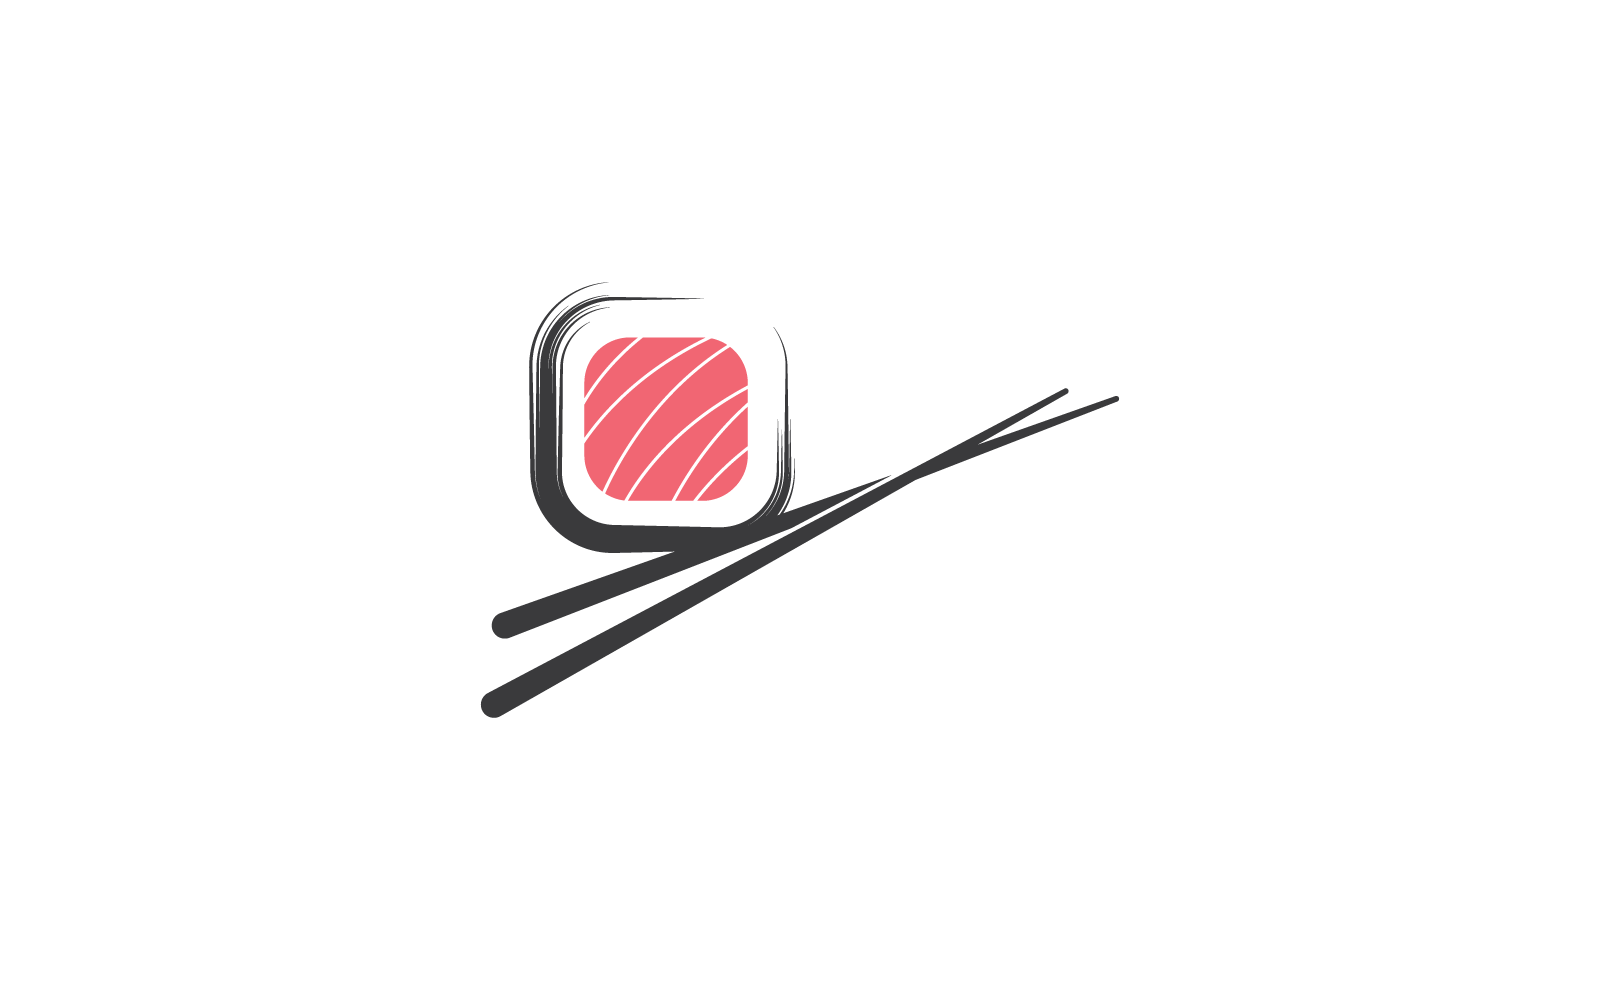 Sushi modern restaurant illustration logo design Logo Template